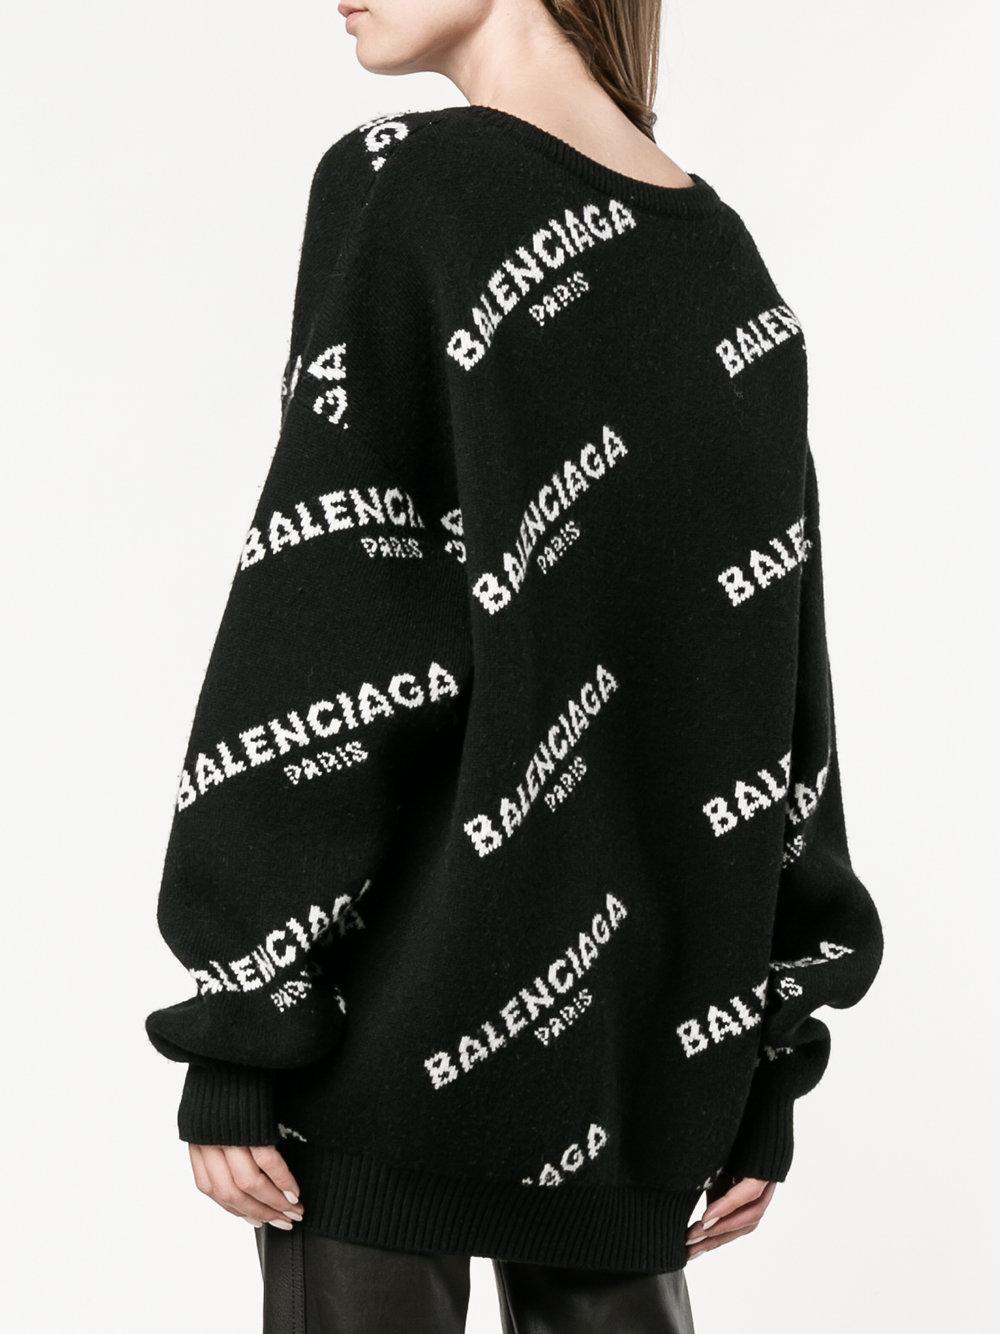 Balenciaga Wool Logo Jumper in Black - Lyst